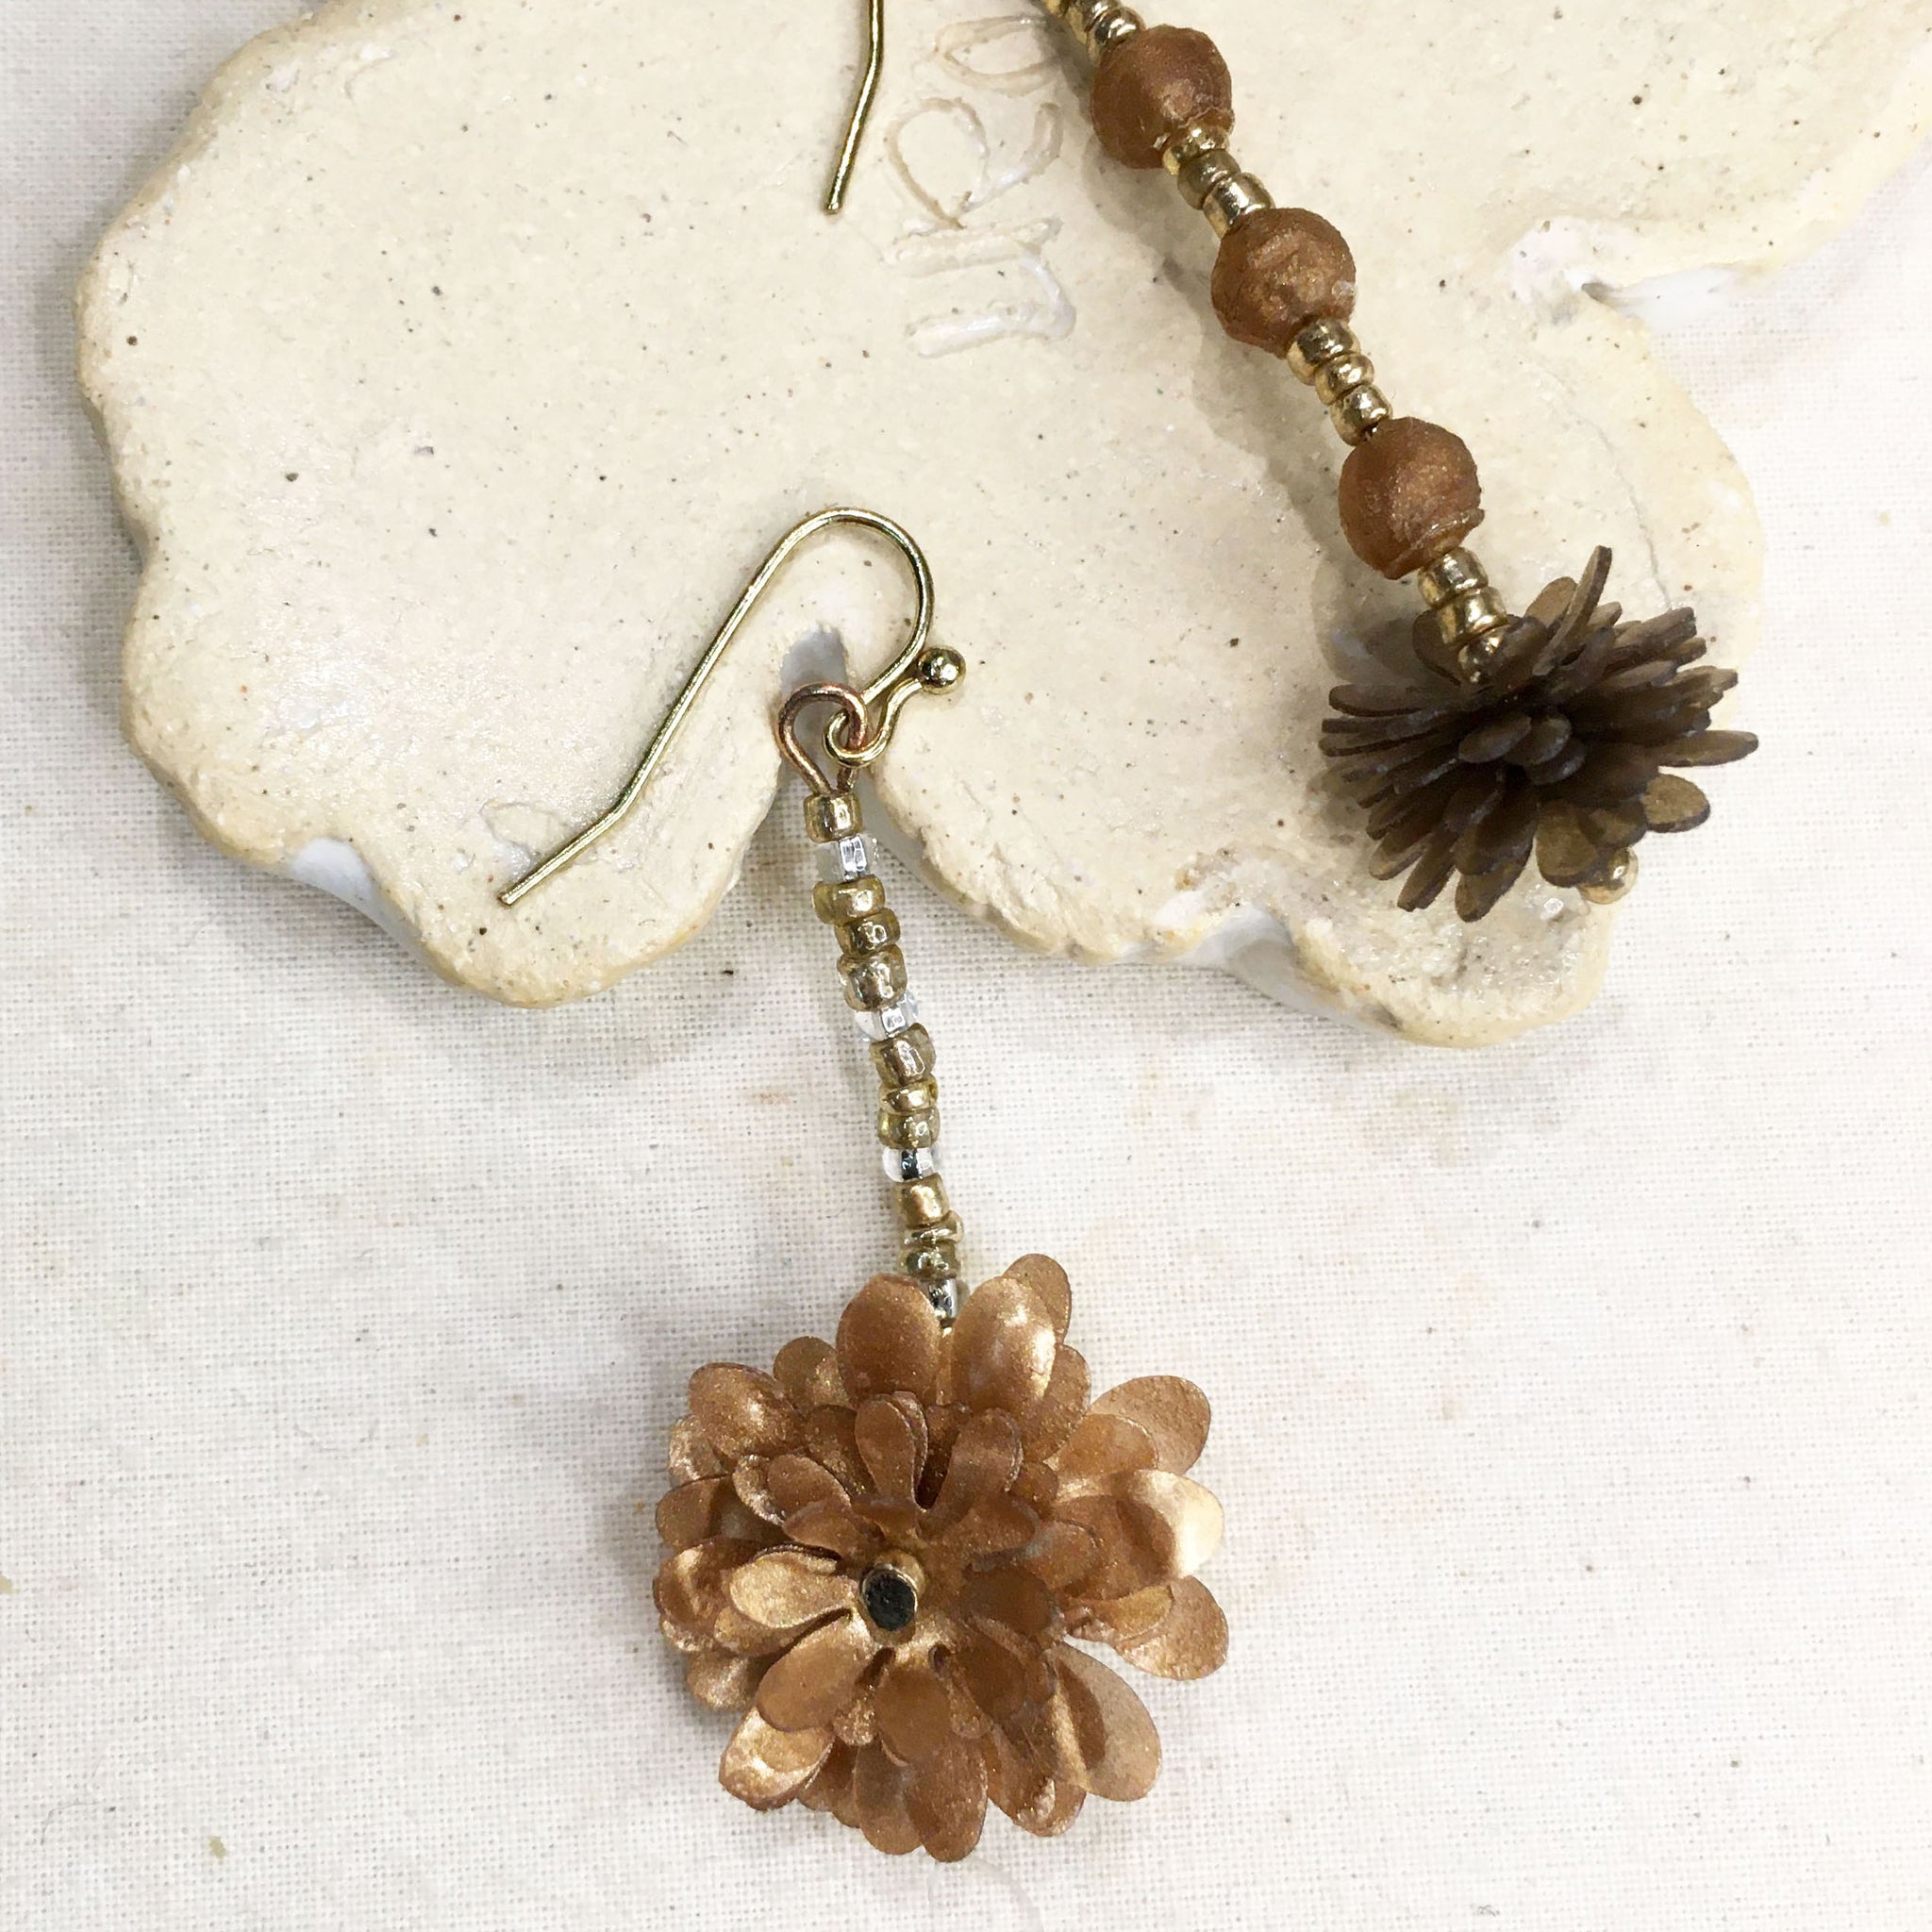 Bloom Series No.5 | Agar Petals, Beads x Antique Bronze Hook Earrings | 52mmx22mmm, 55mmx15mm